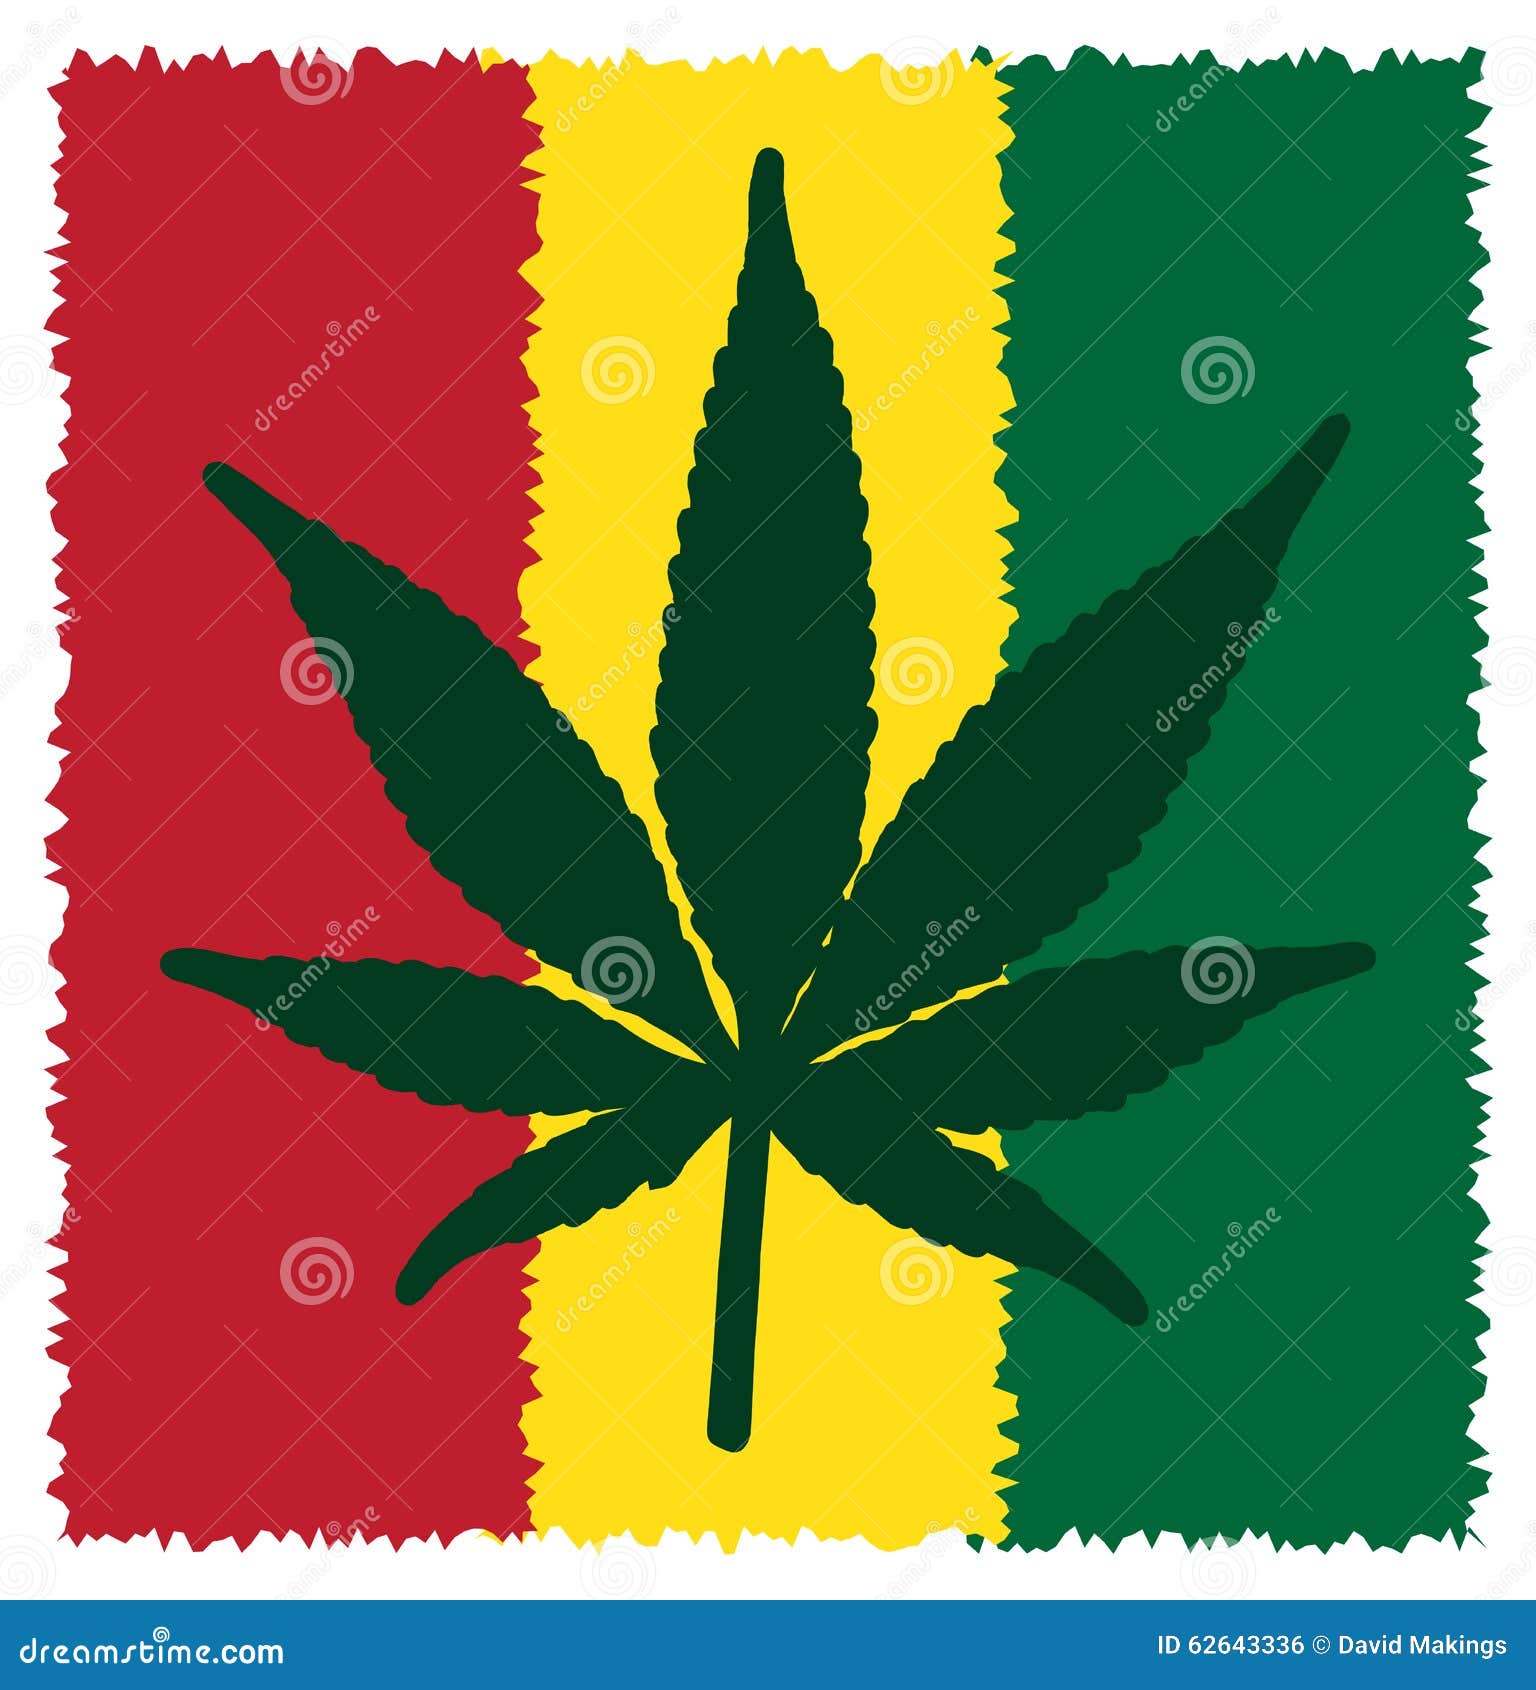 символ марихуаны для ника